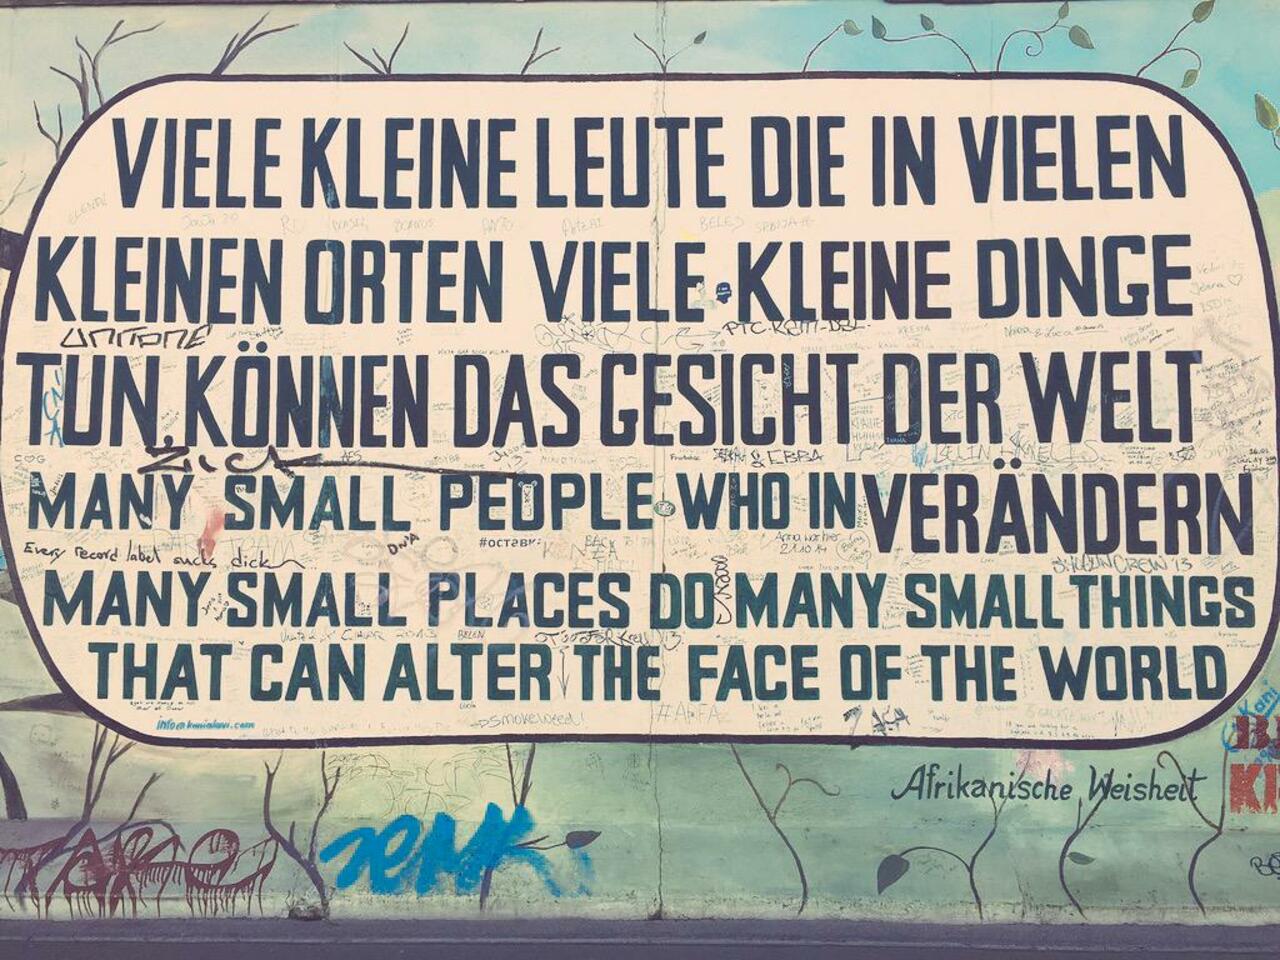 wonderful message from
East Side Gallery #BerlinWall
#graffiti #streetart #Berlin http://t.co/YKS6jJZhEo